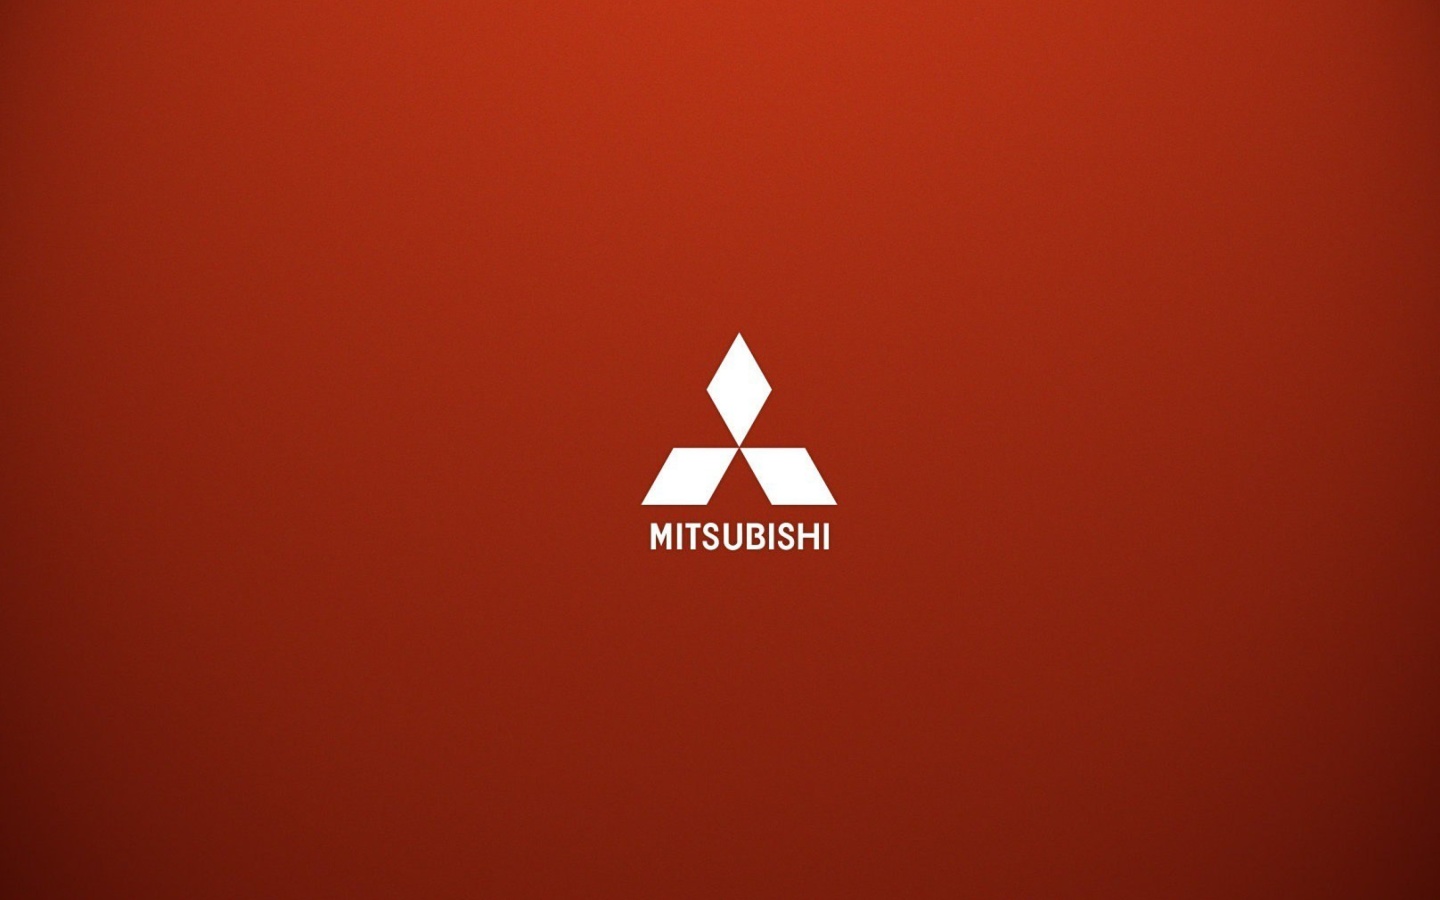 Mitsubishi logo wallpaper 1440x900